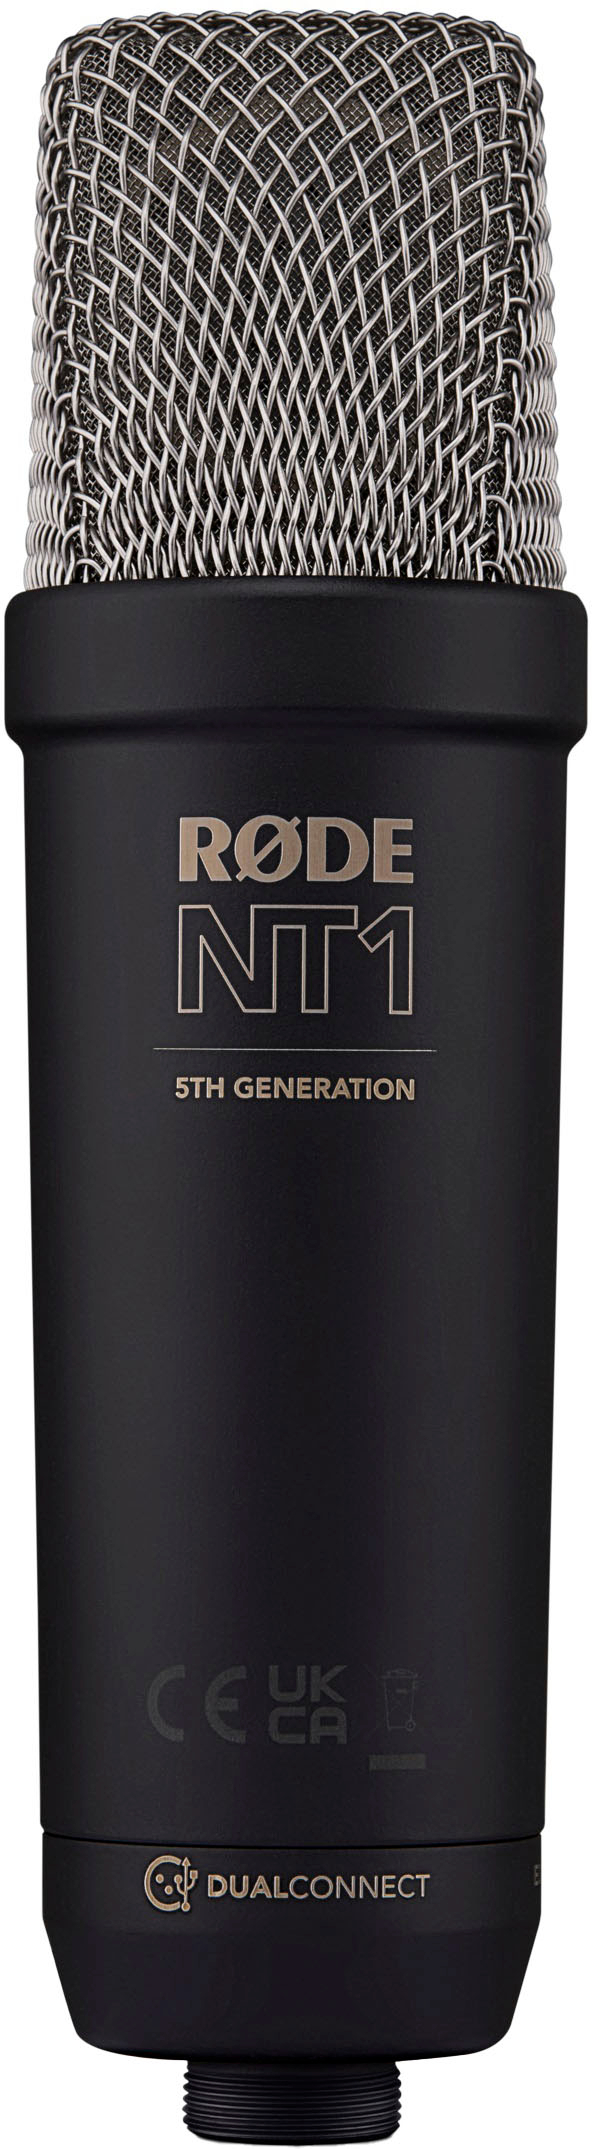 RØDE NT1 Signature Series Studio Condenser Microphone